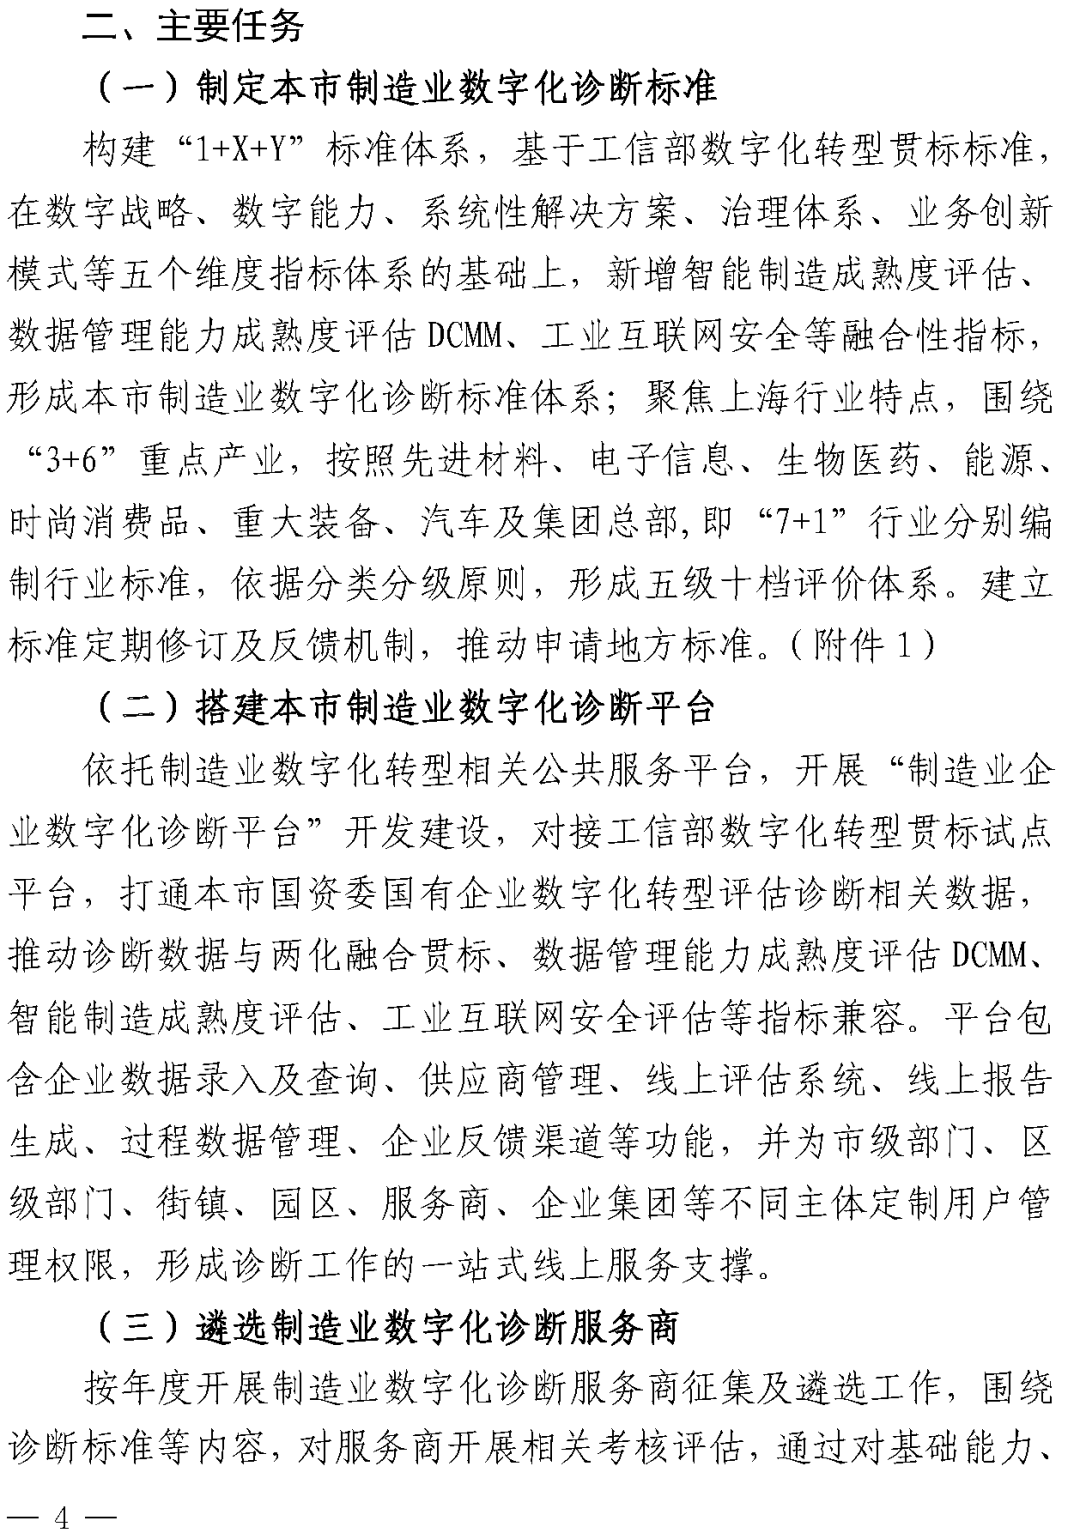 上海：到2025年规上制造业企业数字化转型比例不低于80%,图片,数字化,数字化转型,专精特新,打通,供应链,第4张